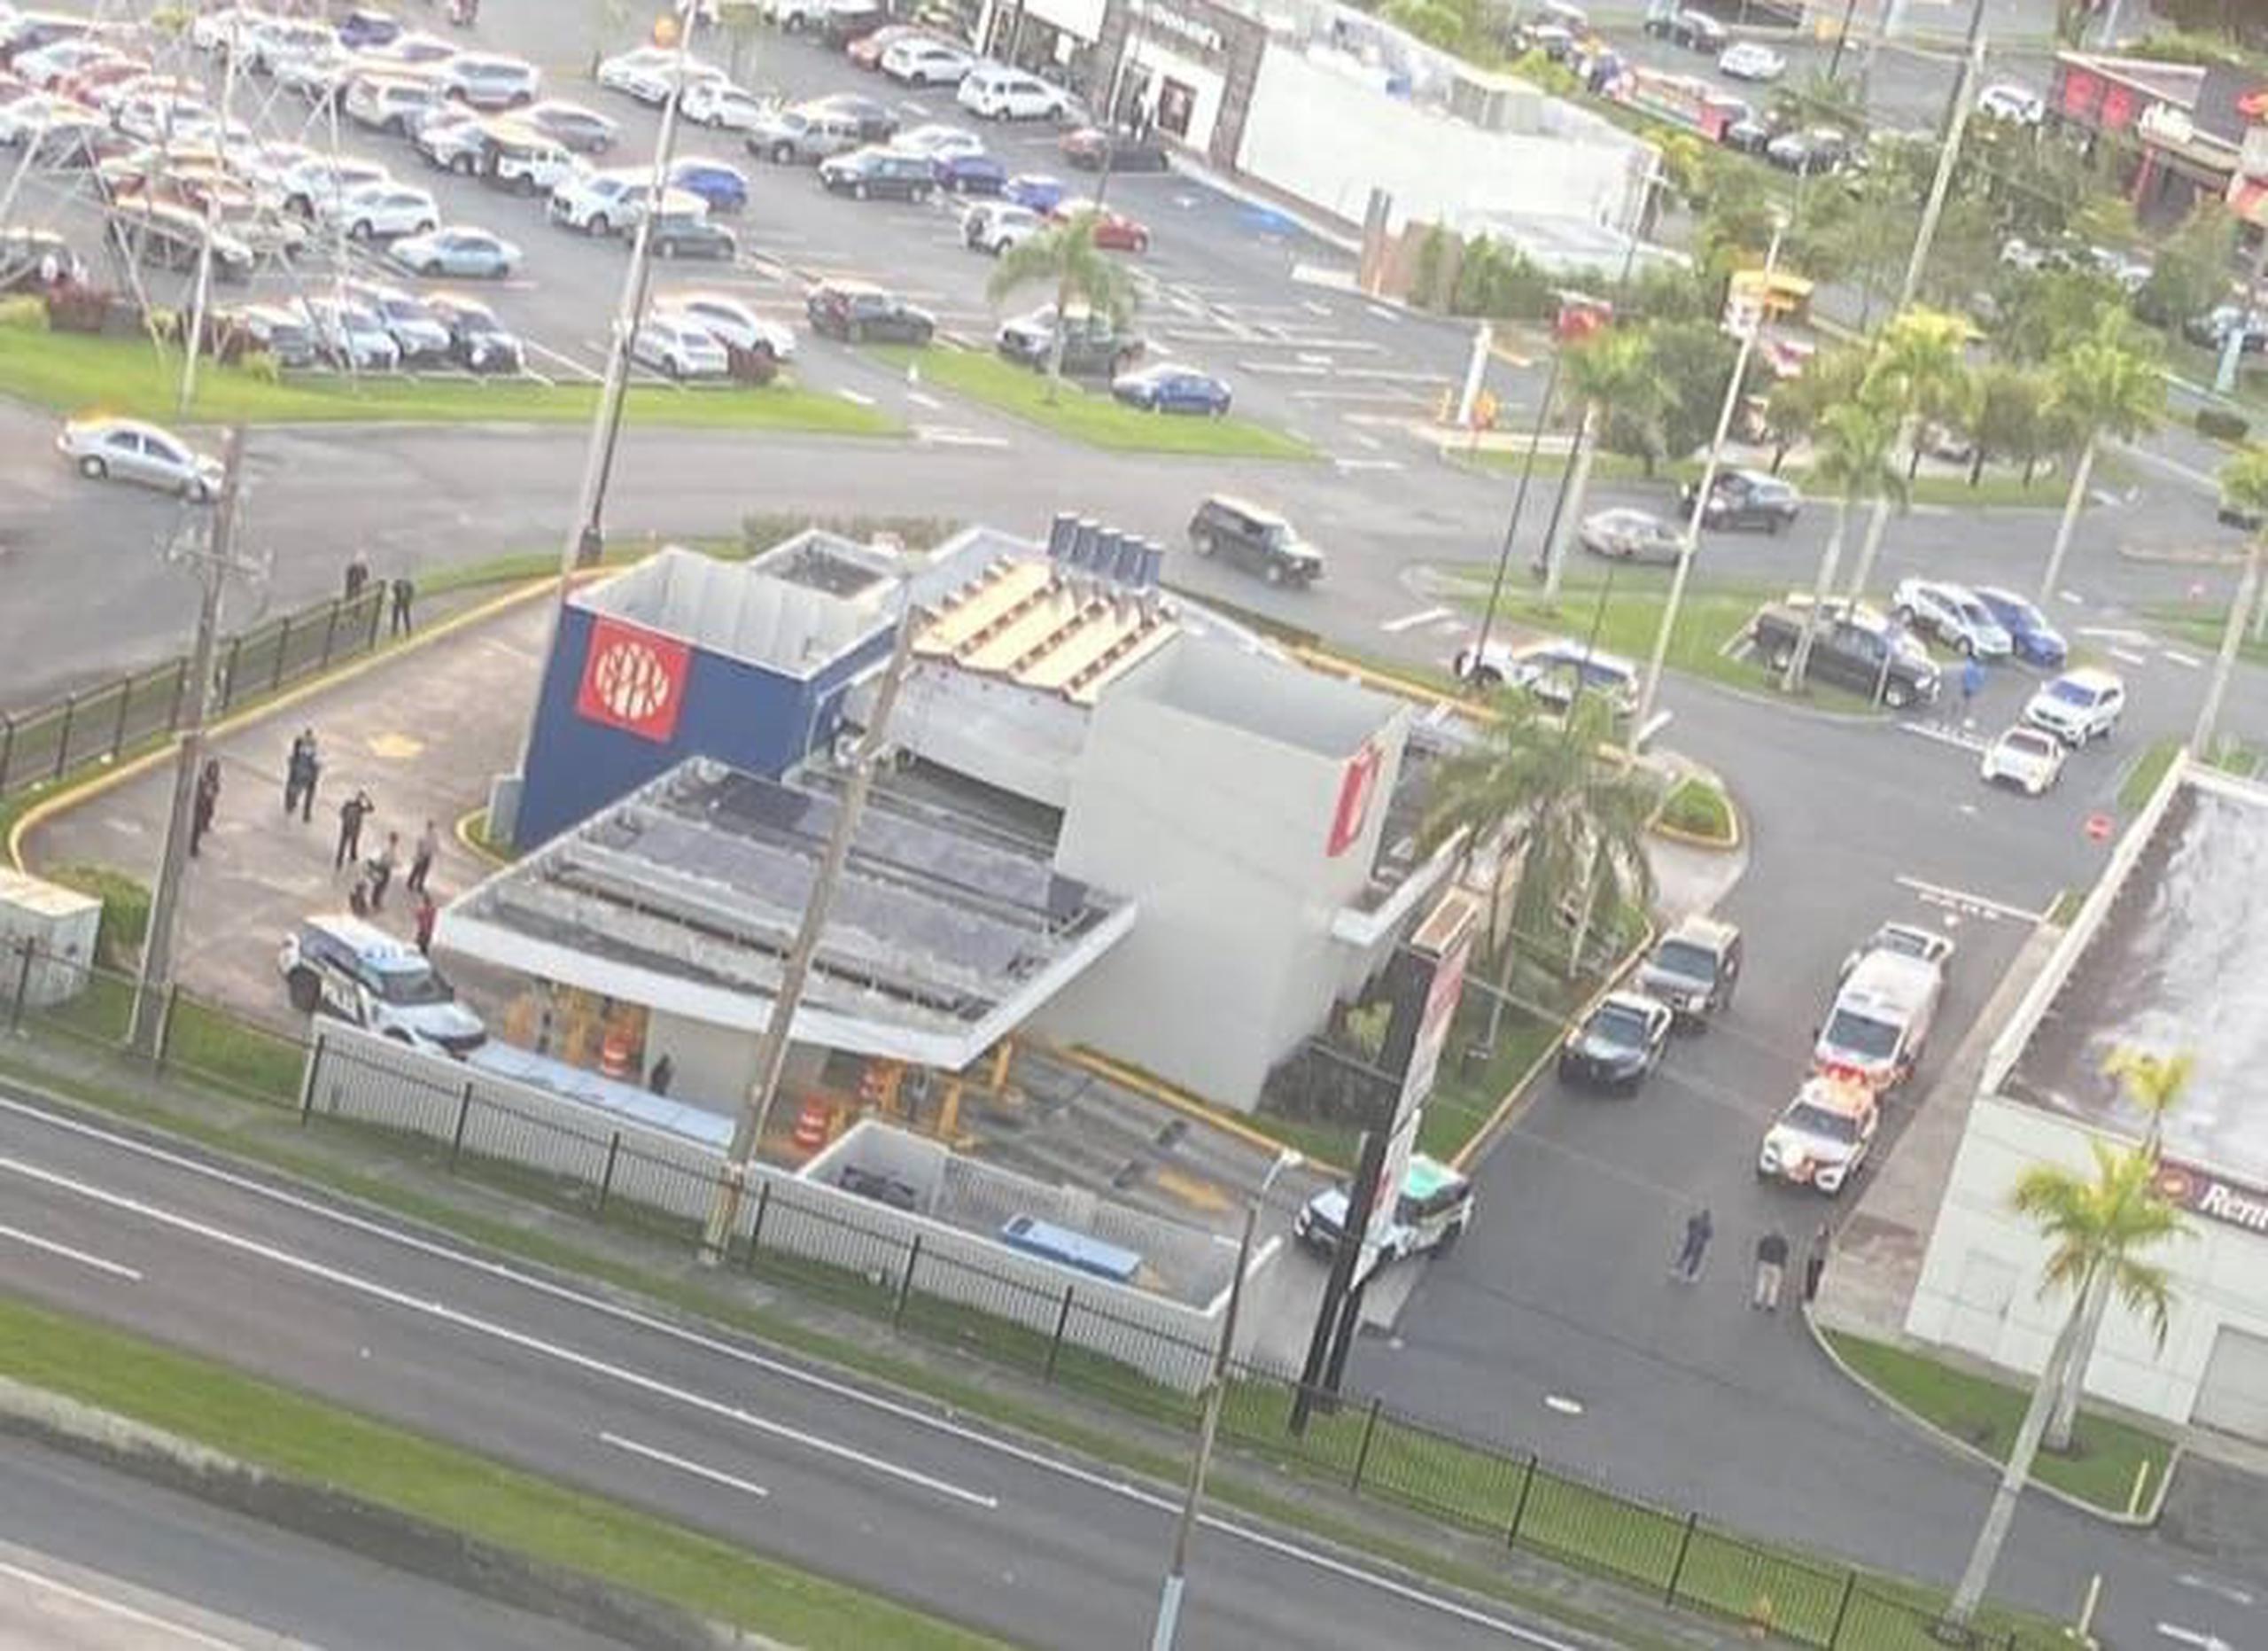 Foto aérea del incidente reportado por el Negociado de la Policía en los predios de un autobanco en el centro comercial Plaza Guaynabo.